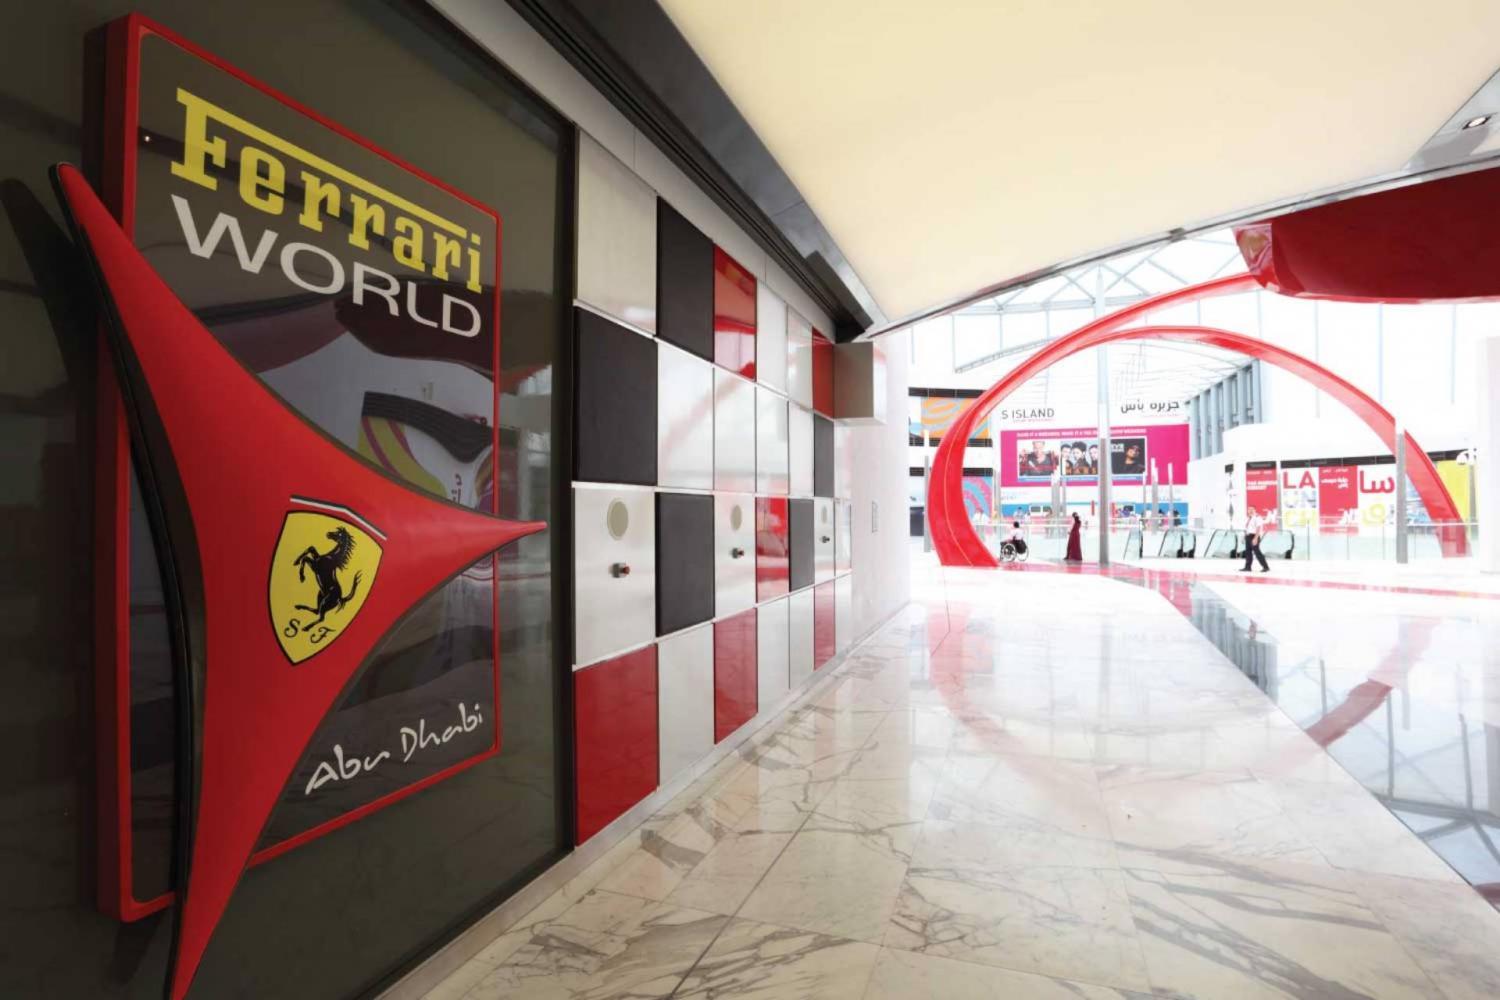 Abu-Dhabi-Mosque-&-Ferrari-World-from-Dubai-5